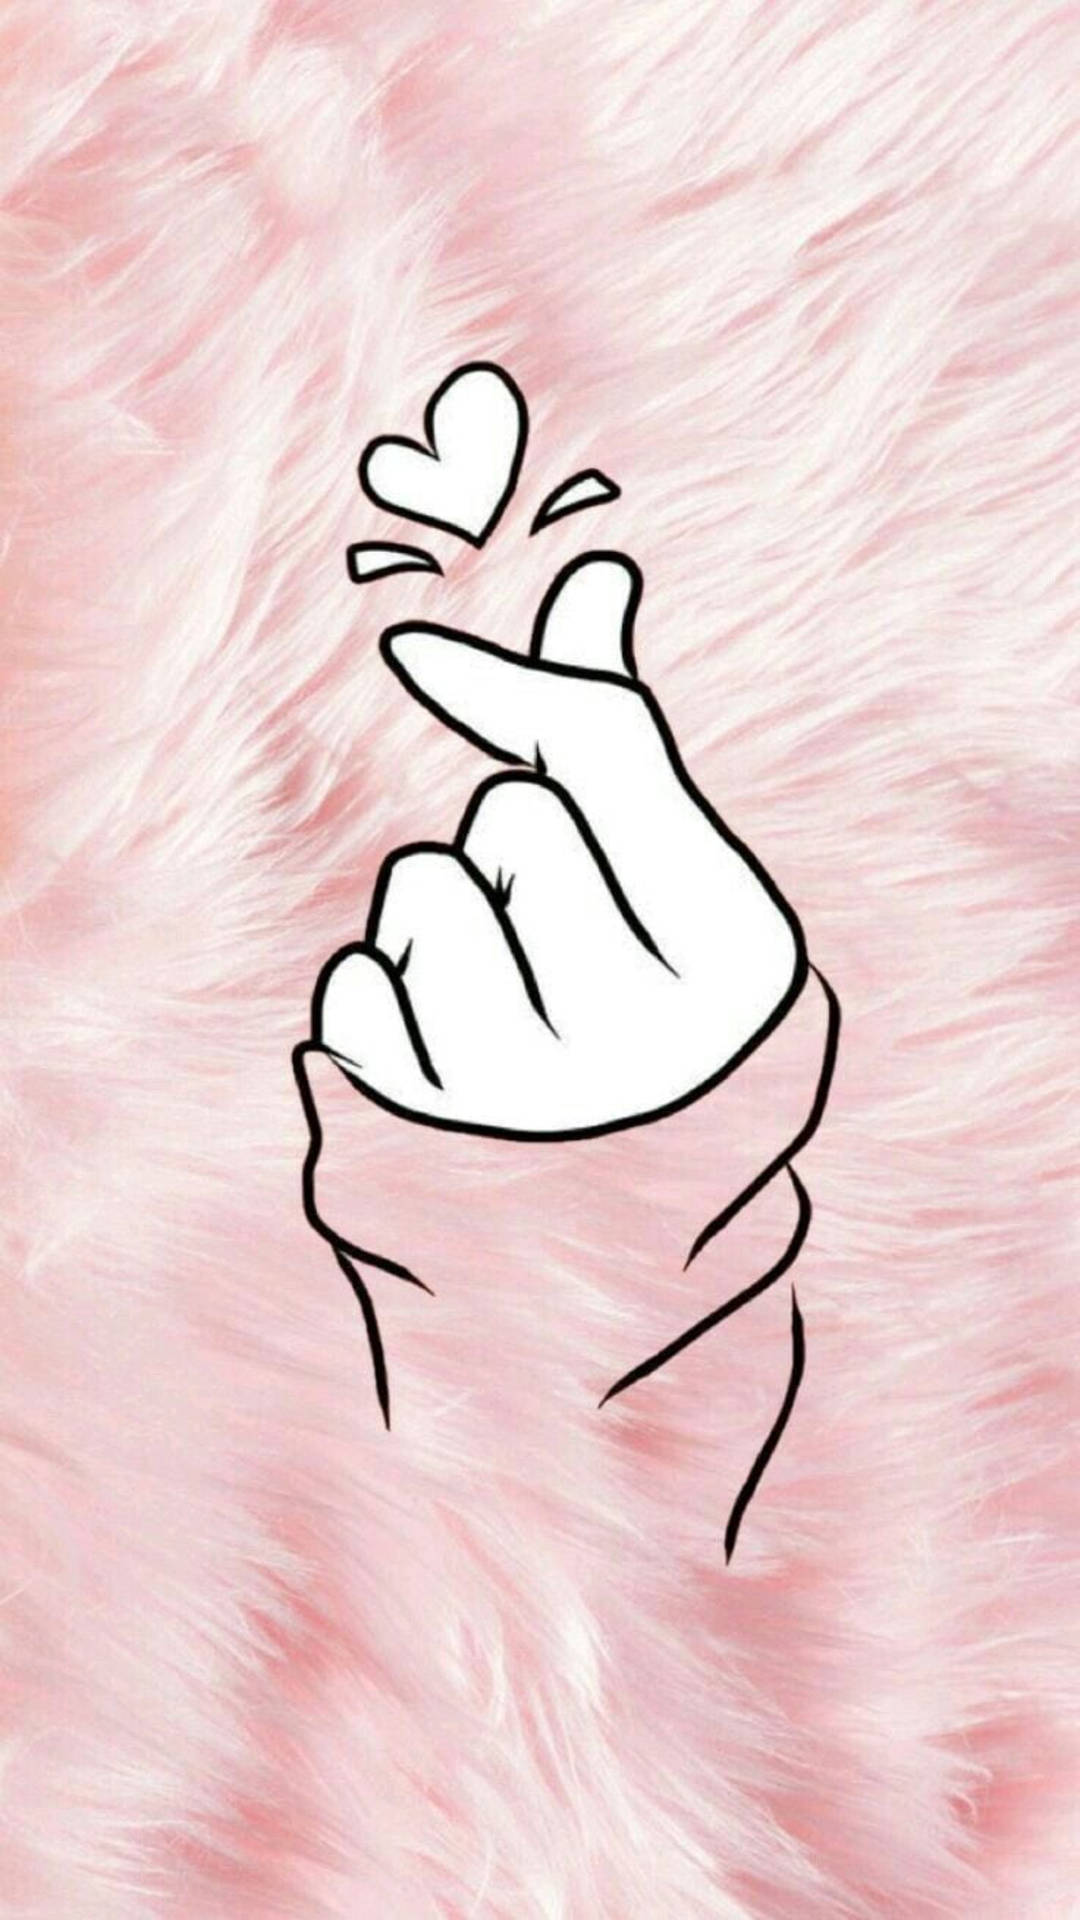 Saranghae Finger Heart On Pink Rug Wallpaper